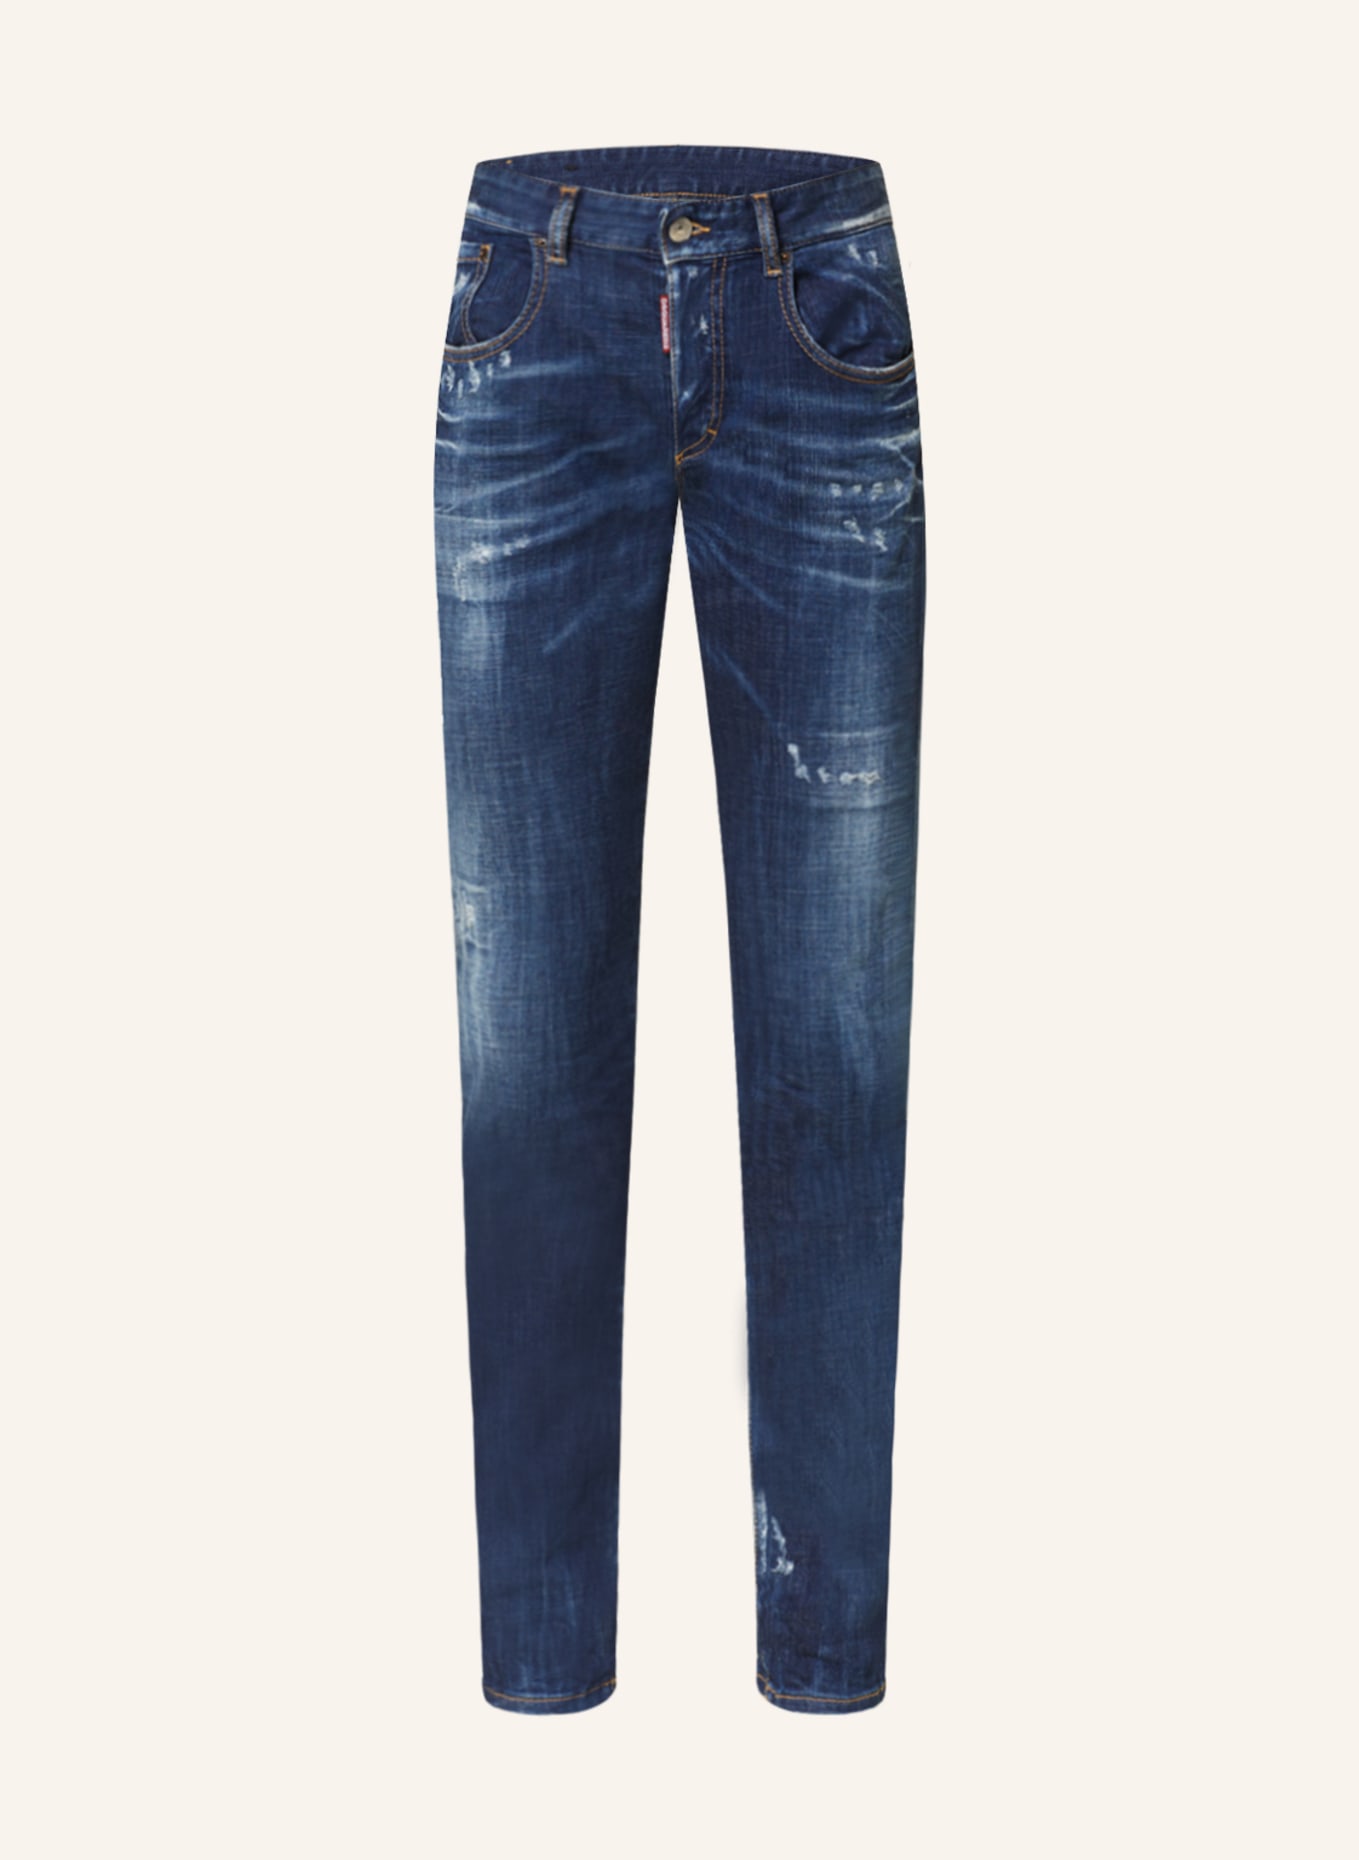 DSQUARED2 Skinny Jeans 24/7, Farbe: 470 NAVY BLUE (Bild 1)